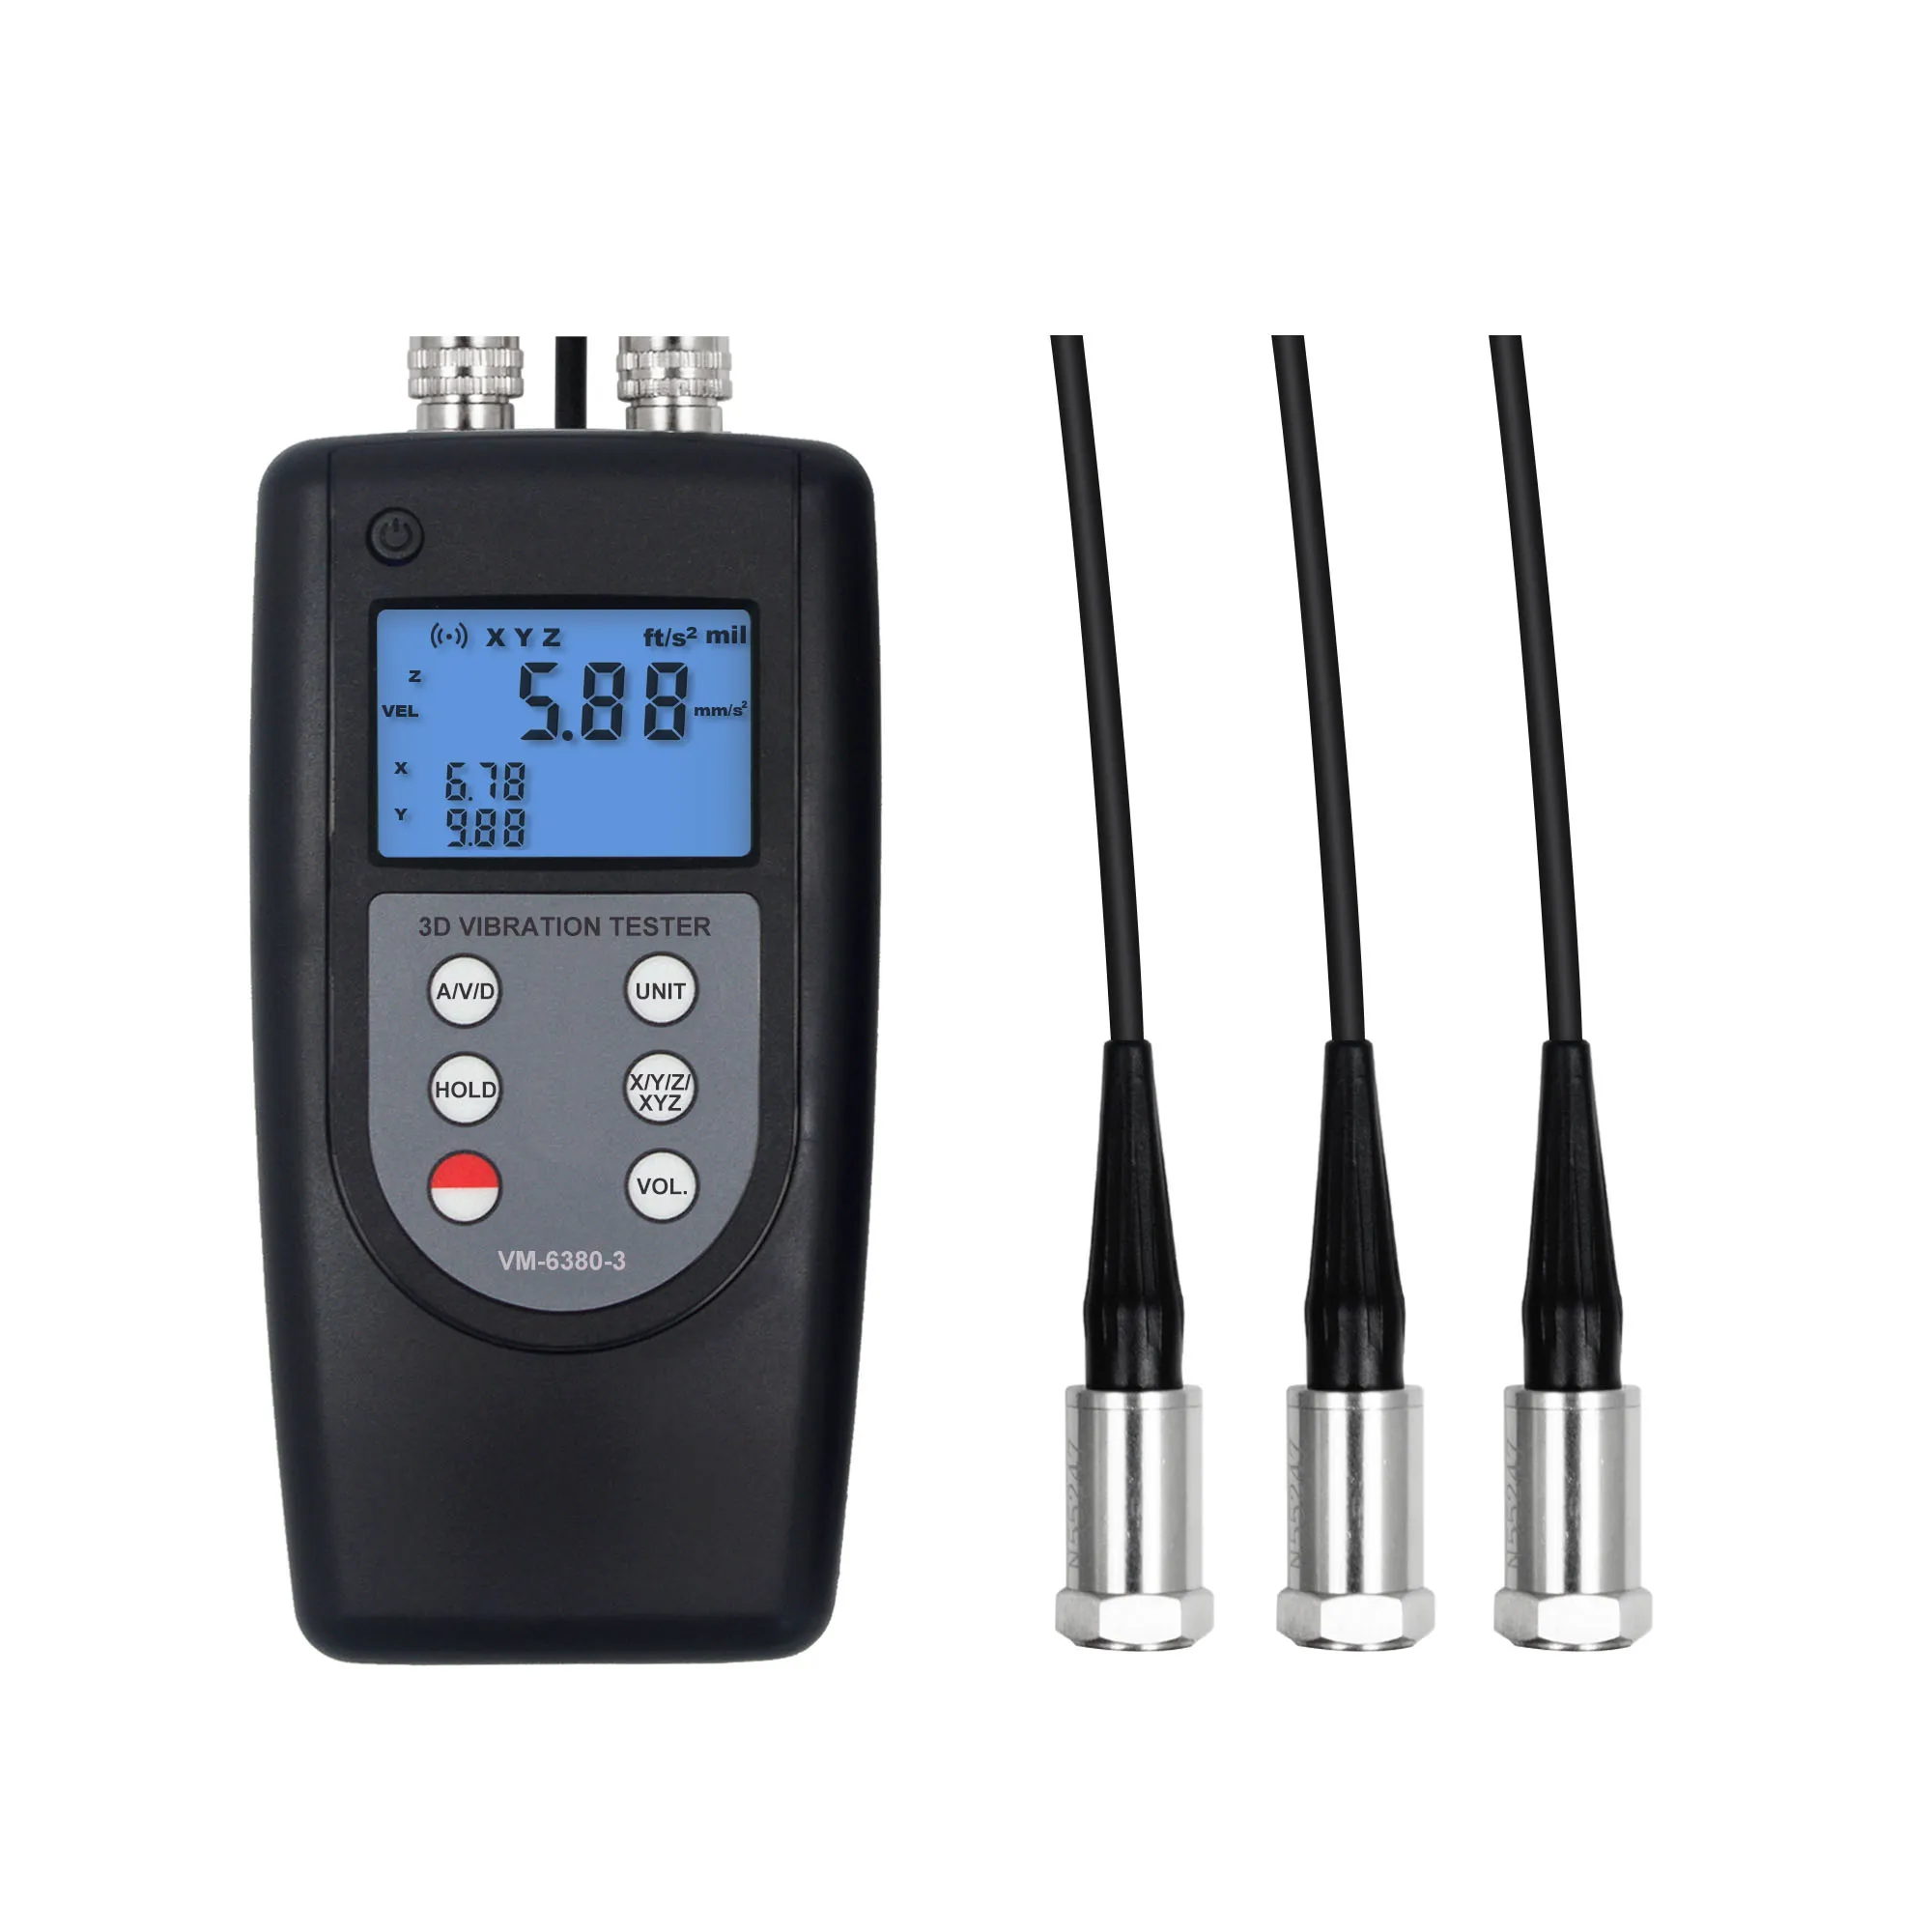 Tester di vibrazioni 3D Vibrometro digitale 3 canali VM-6380-3 0,01-400 mm/s True RMS